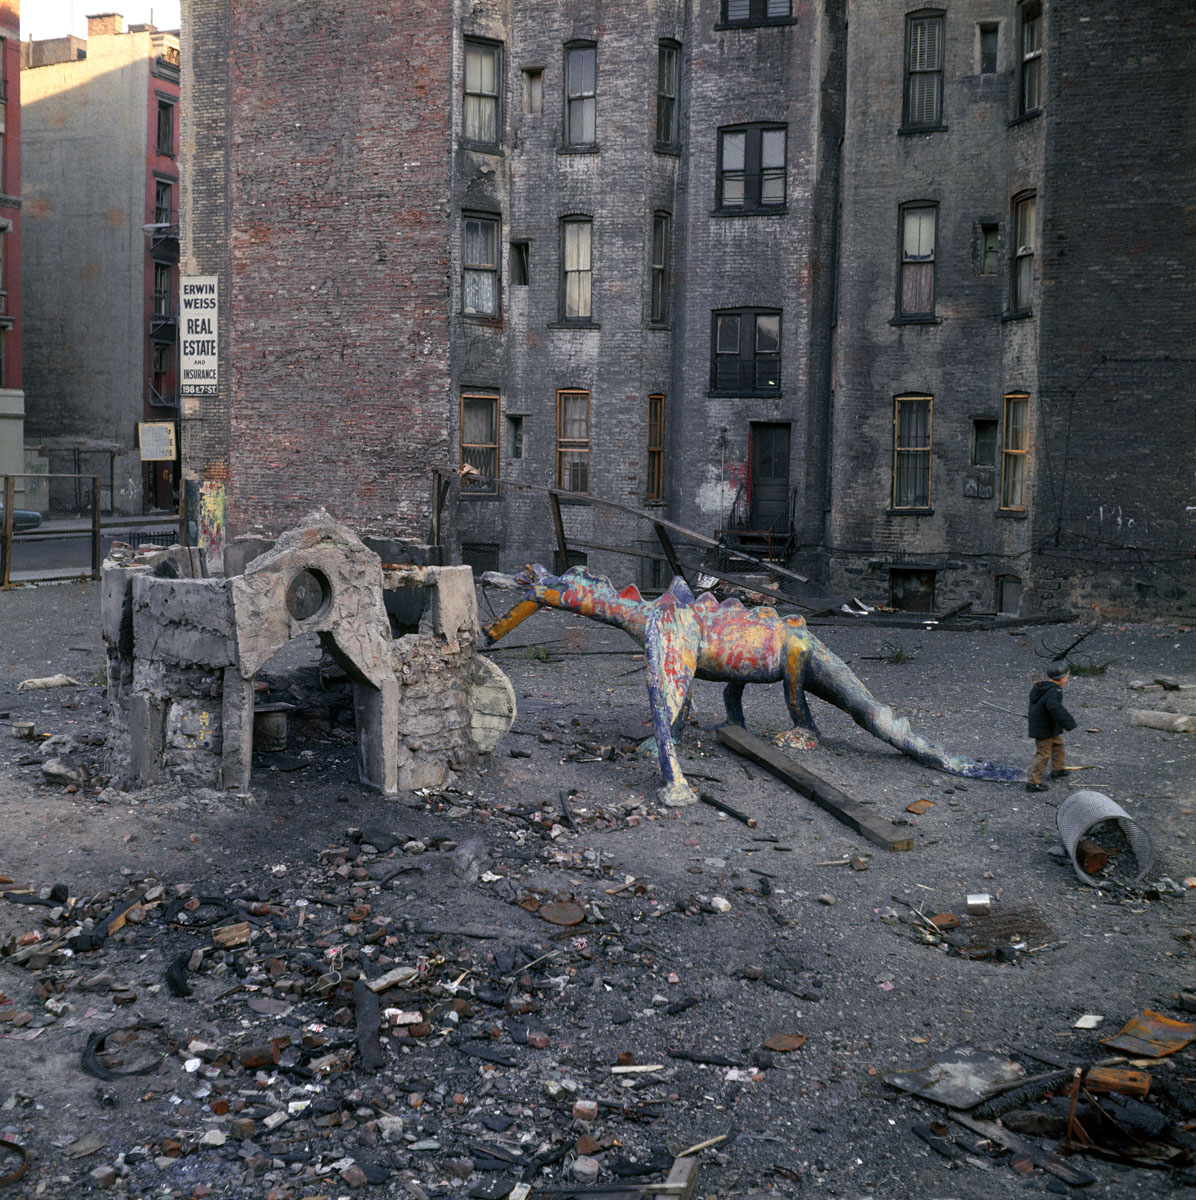 La photographie montre une zone urbaine abandonnée ornée de la sculpture d'un dr